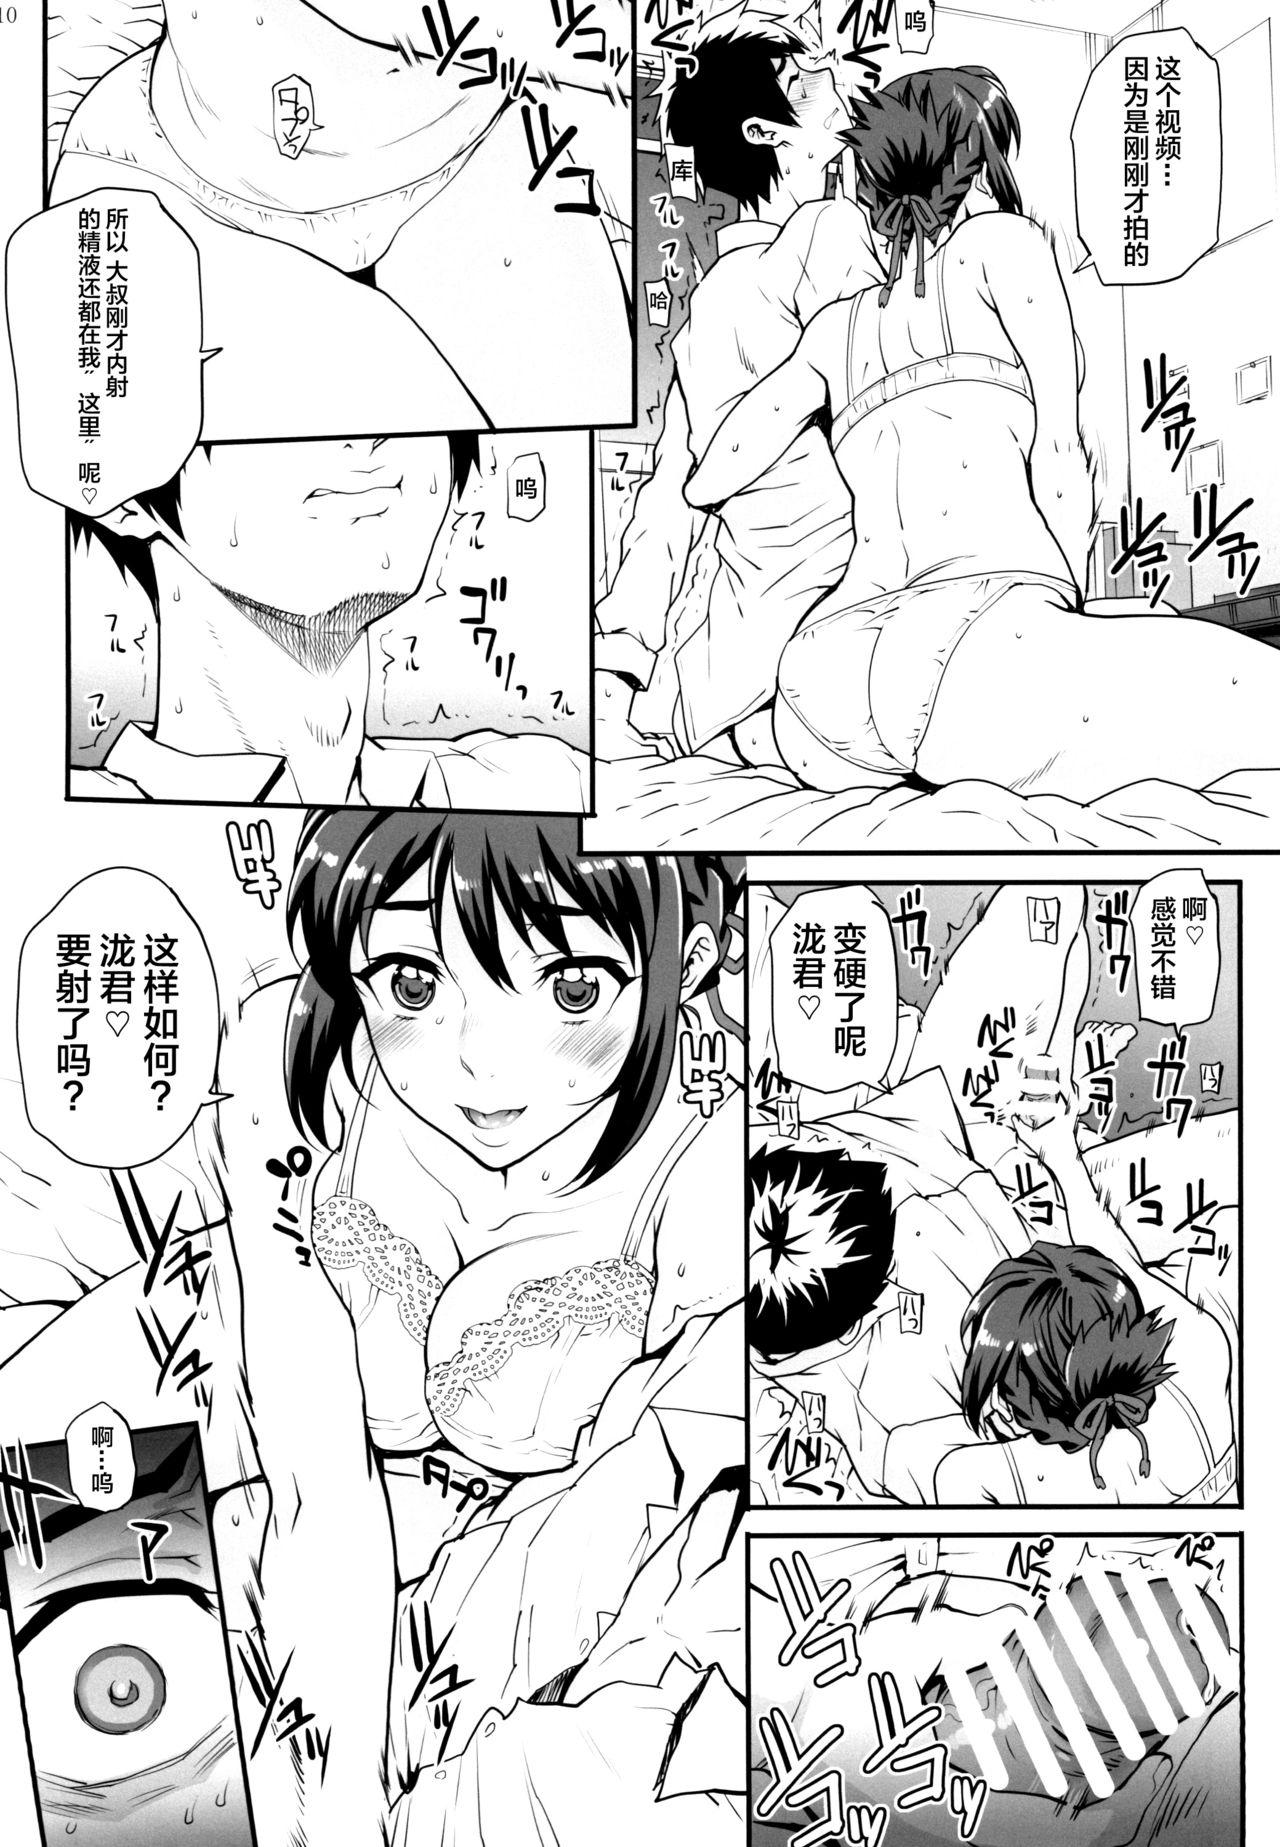 Cuck Kimi no Janai. Zoku - Kimi no na wa. Nuru Massage - Page 12